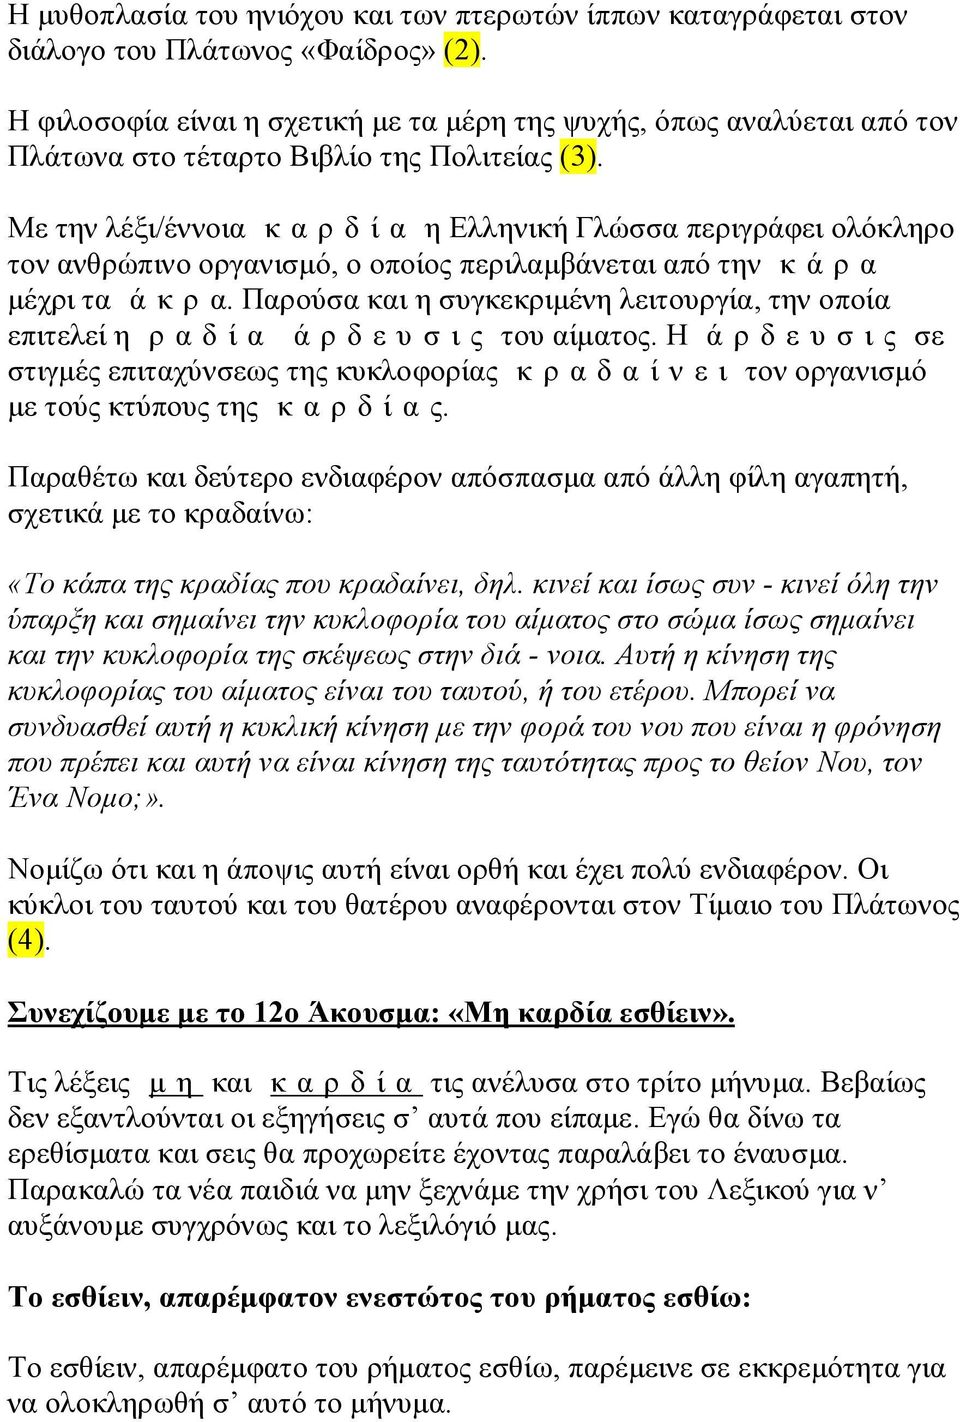 Με την λέξι/έννοια κ α ρ δ ί α η Ελληνική Γλώσσα περιγράφει ολόκληρο τον ανθρώπινο οργανισμό, ο οποίος περιλαμβάνεται από την κ ά ρ α μέχρι τα ά κ ρ α.